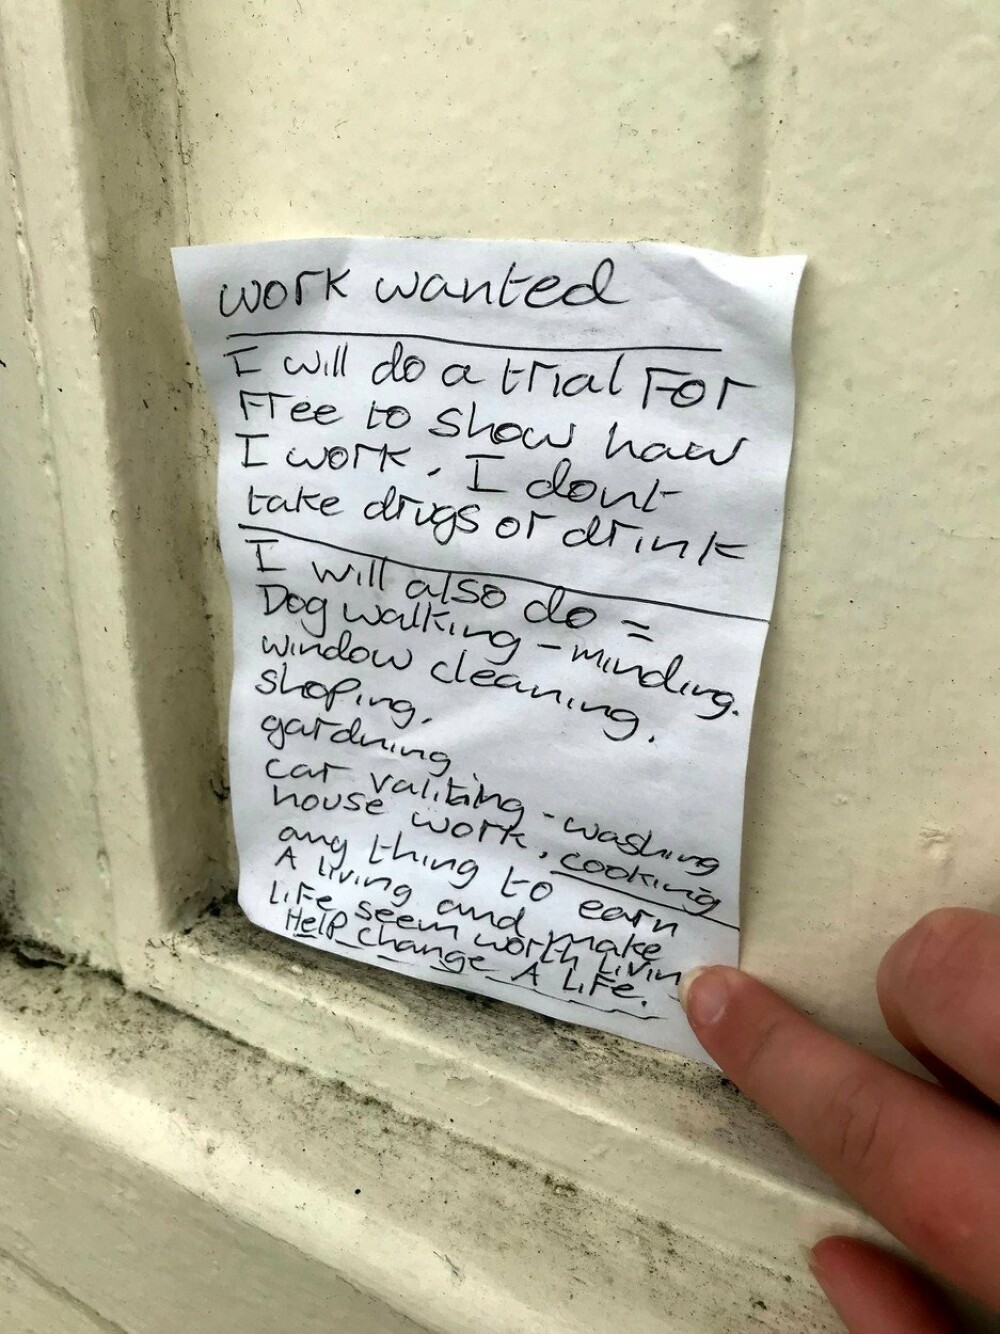 Biletul emoţionant scris de un bărbat fără adăpost i-a adus o locuinţă - Imaginea 3